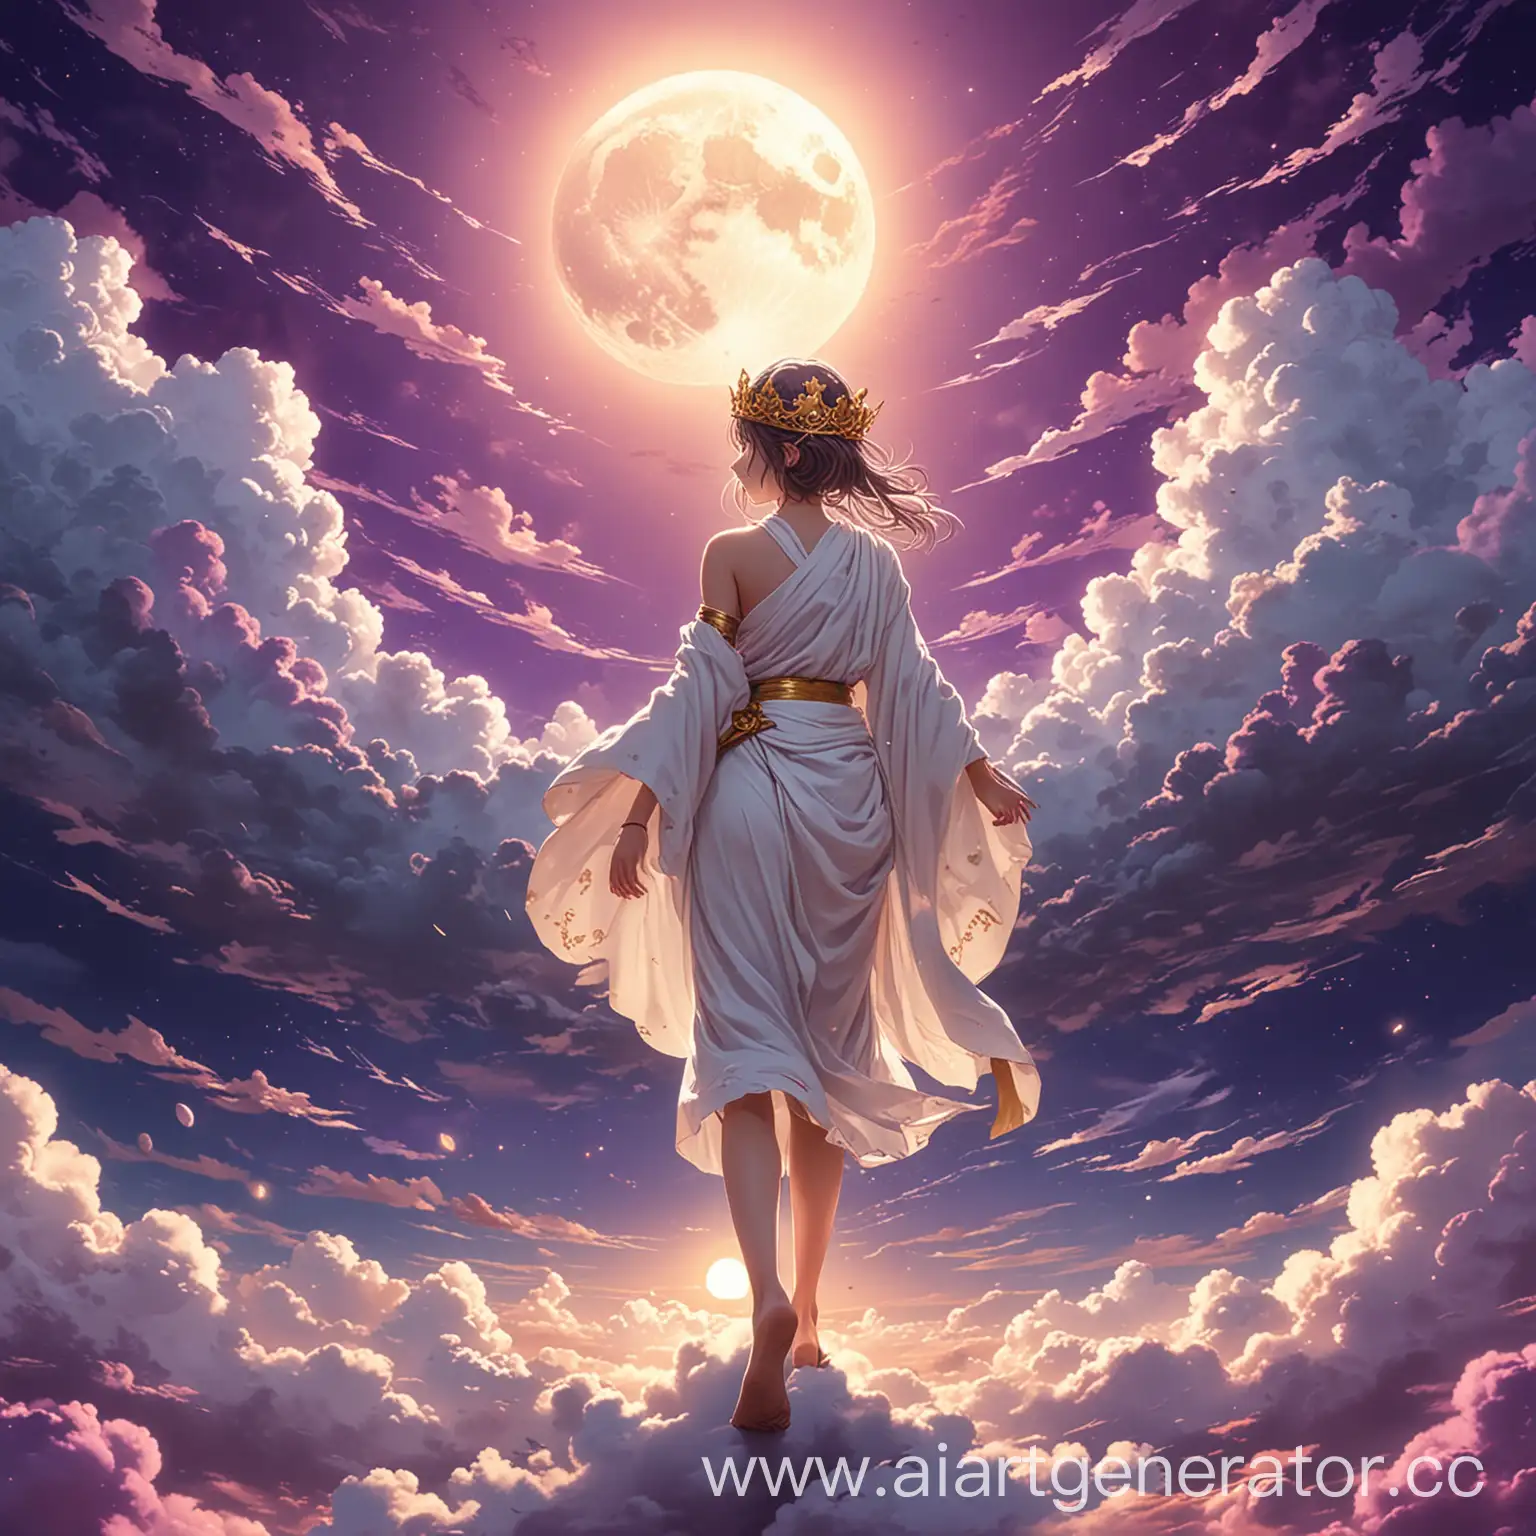 аниме девушка в белой тоге , с короной на голове идет по пышным облакам облакам к большой золотой луне в фиолетовом небе